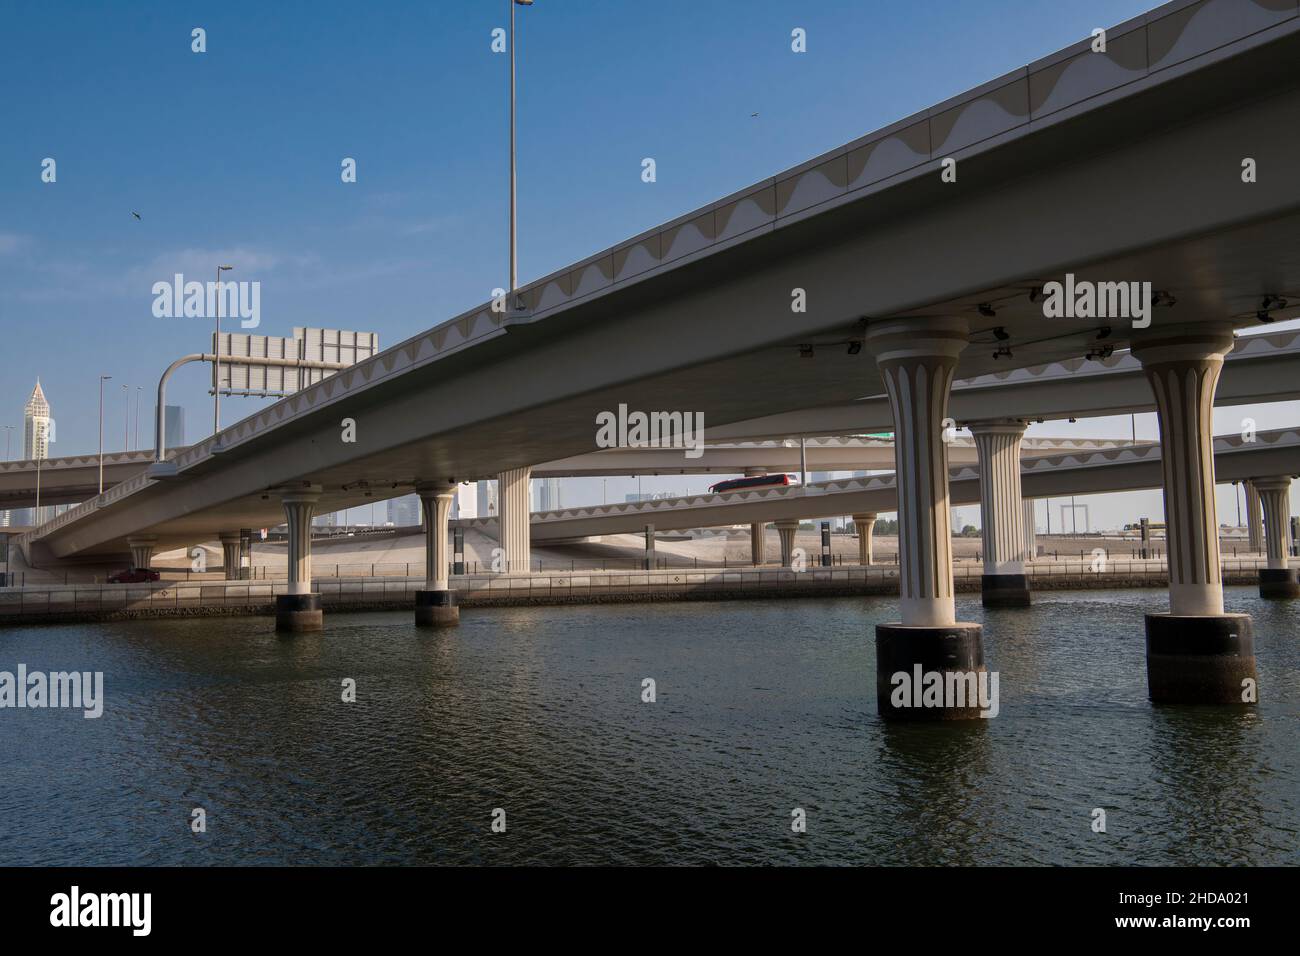 Puentes de carretera que cruzan el Canal de Dubai Foto de stock